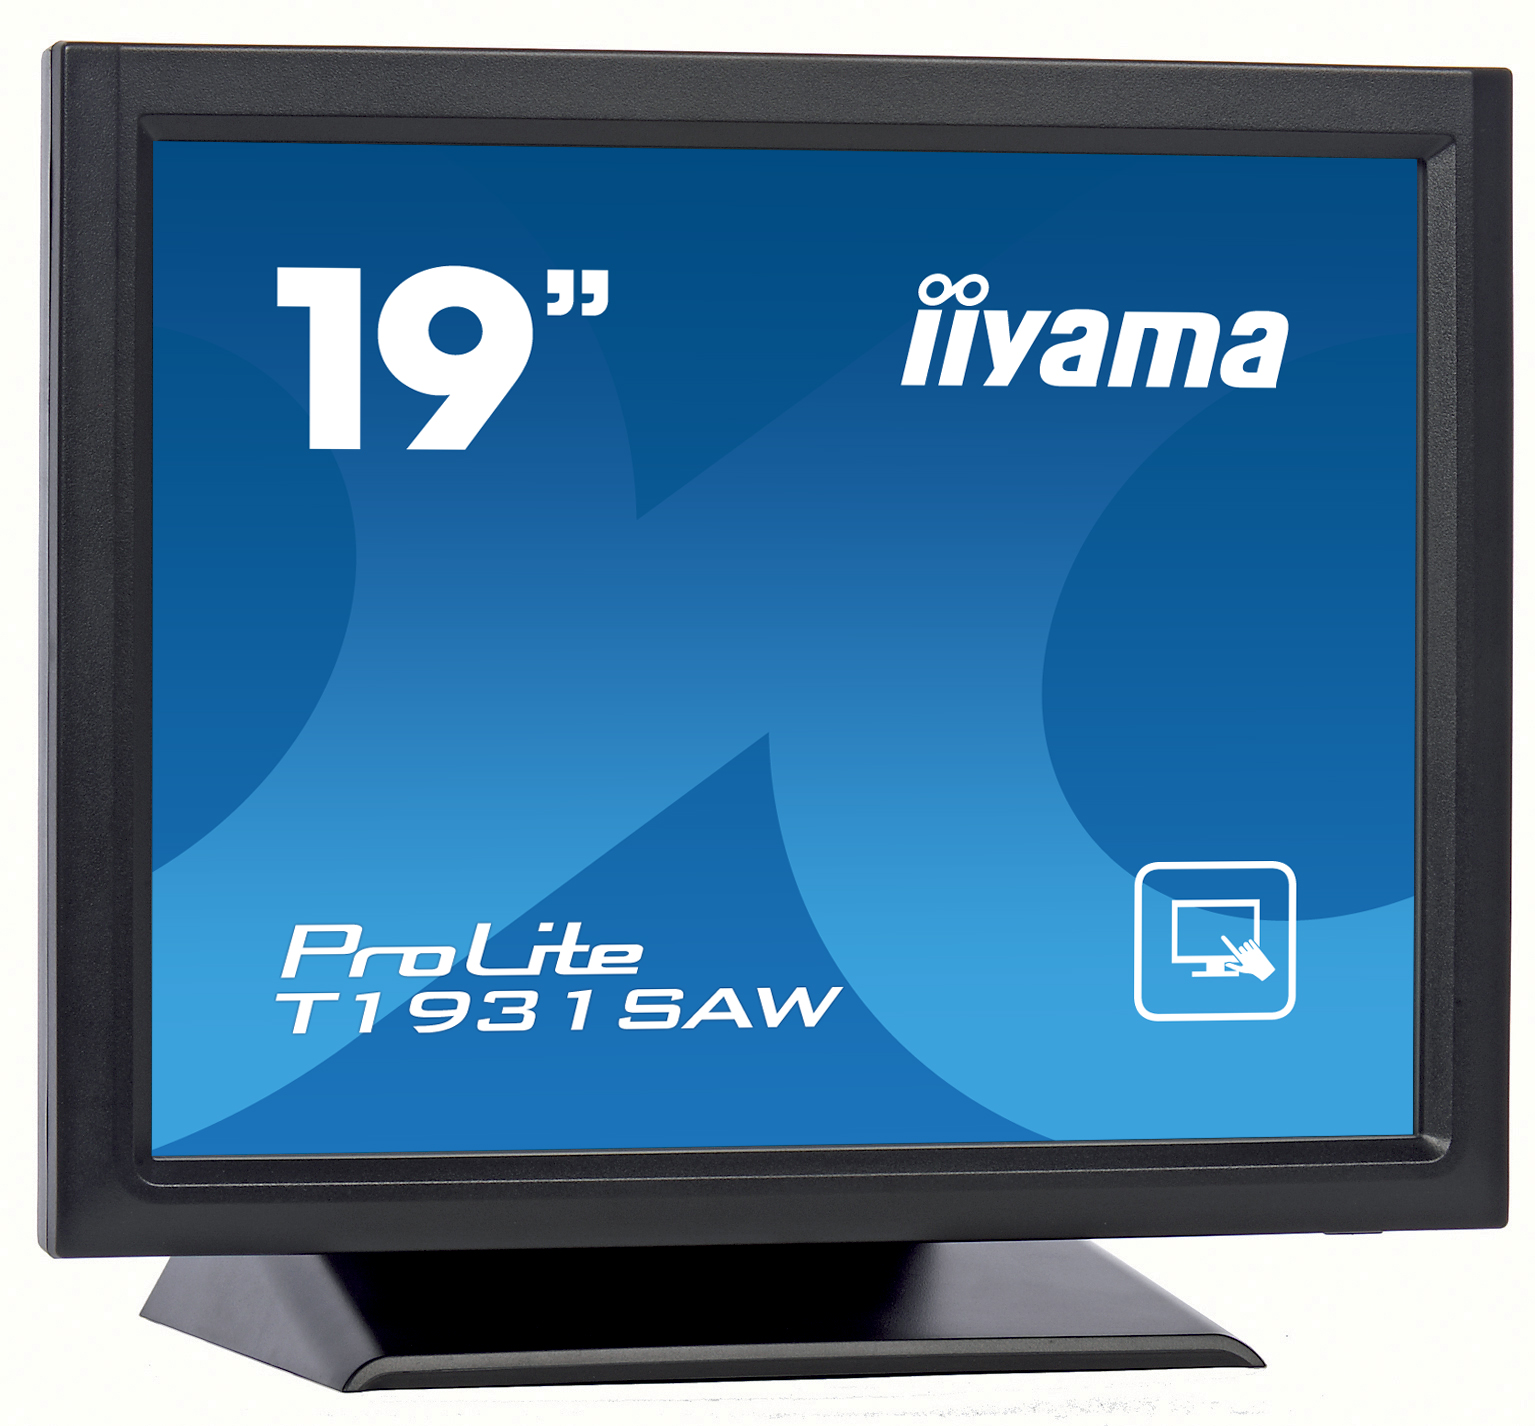 19" iiyama T1931SAW-B5 - TN,SXGA,250cd/m2, 1000:1,5:4,VGA,HDMI,DP,USB,